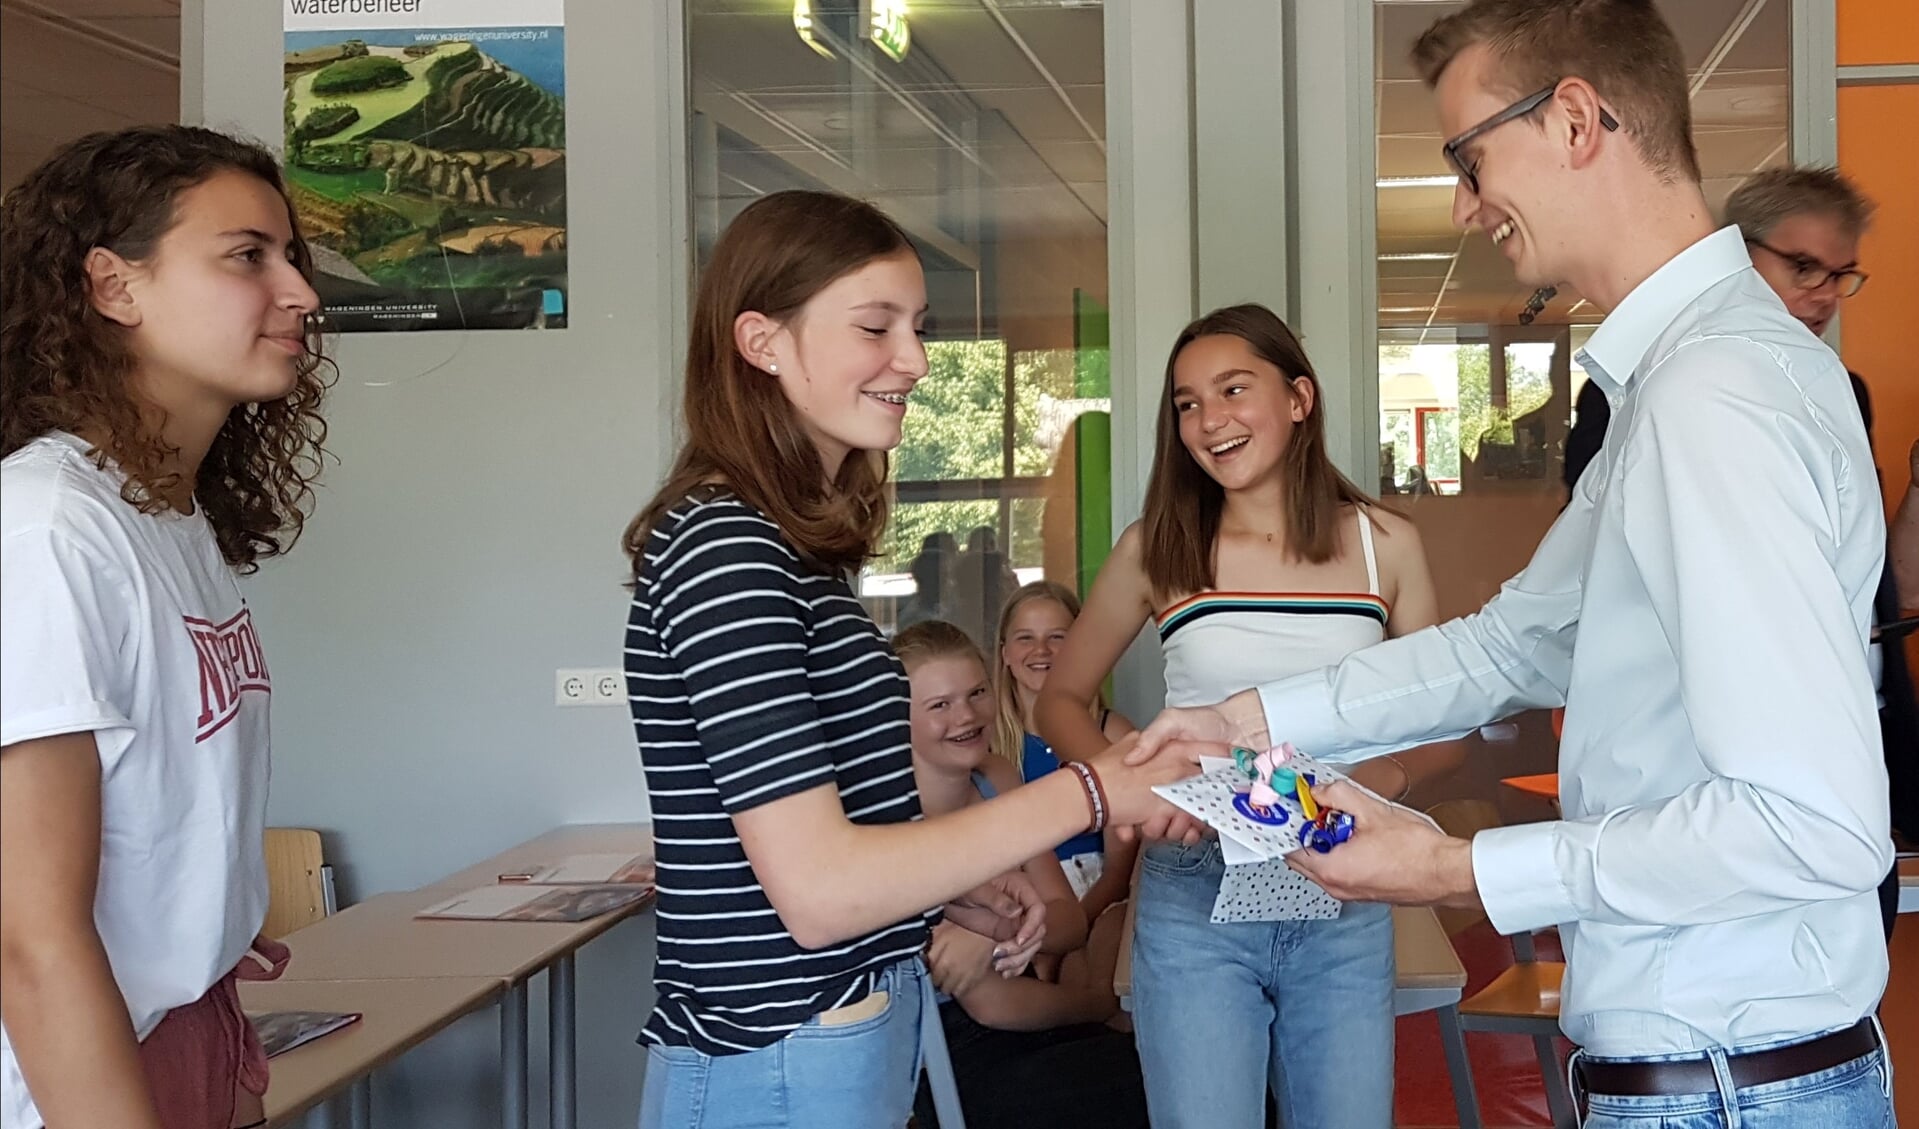 Wethouder Mathijs ten Broeke feliciteert Isa, Milou en Jinre met hun eerste plaats. Foto Erfgoedcentrum Zutphen